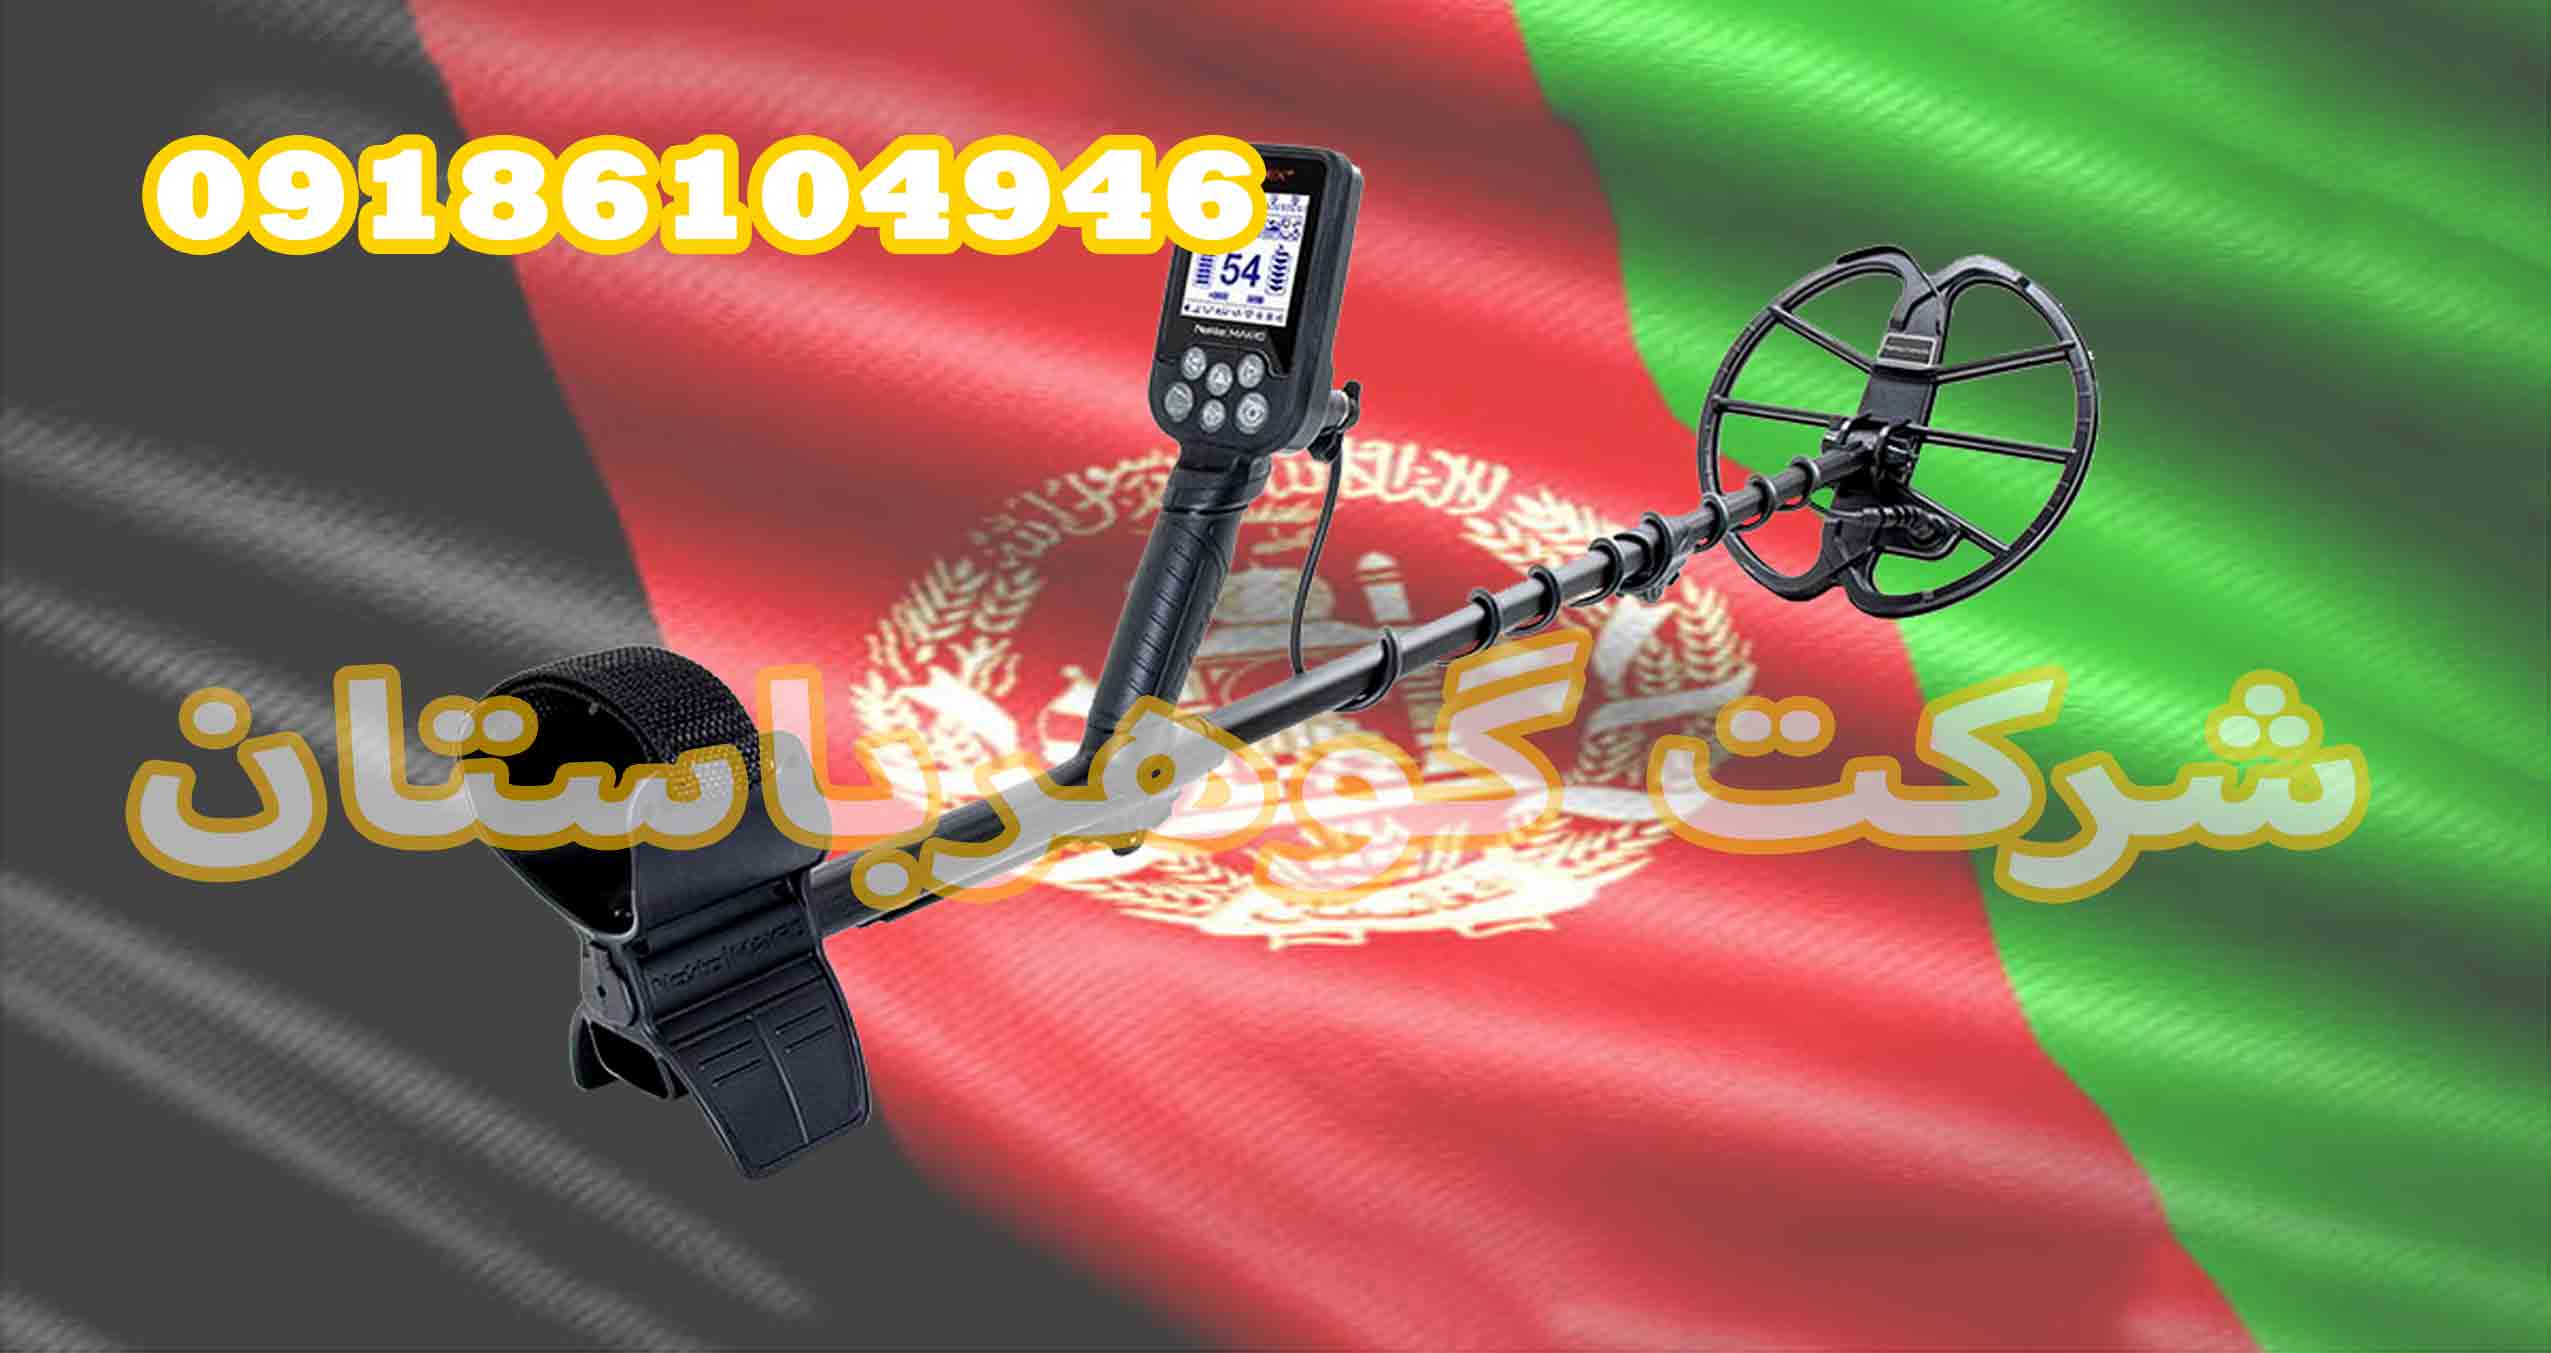 دستگاه گنج یاب در افغانستان